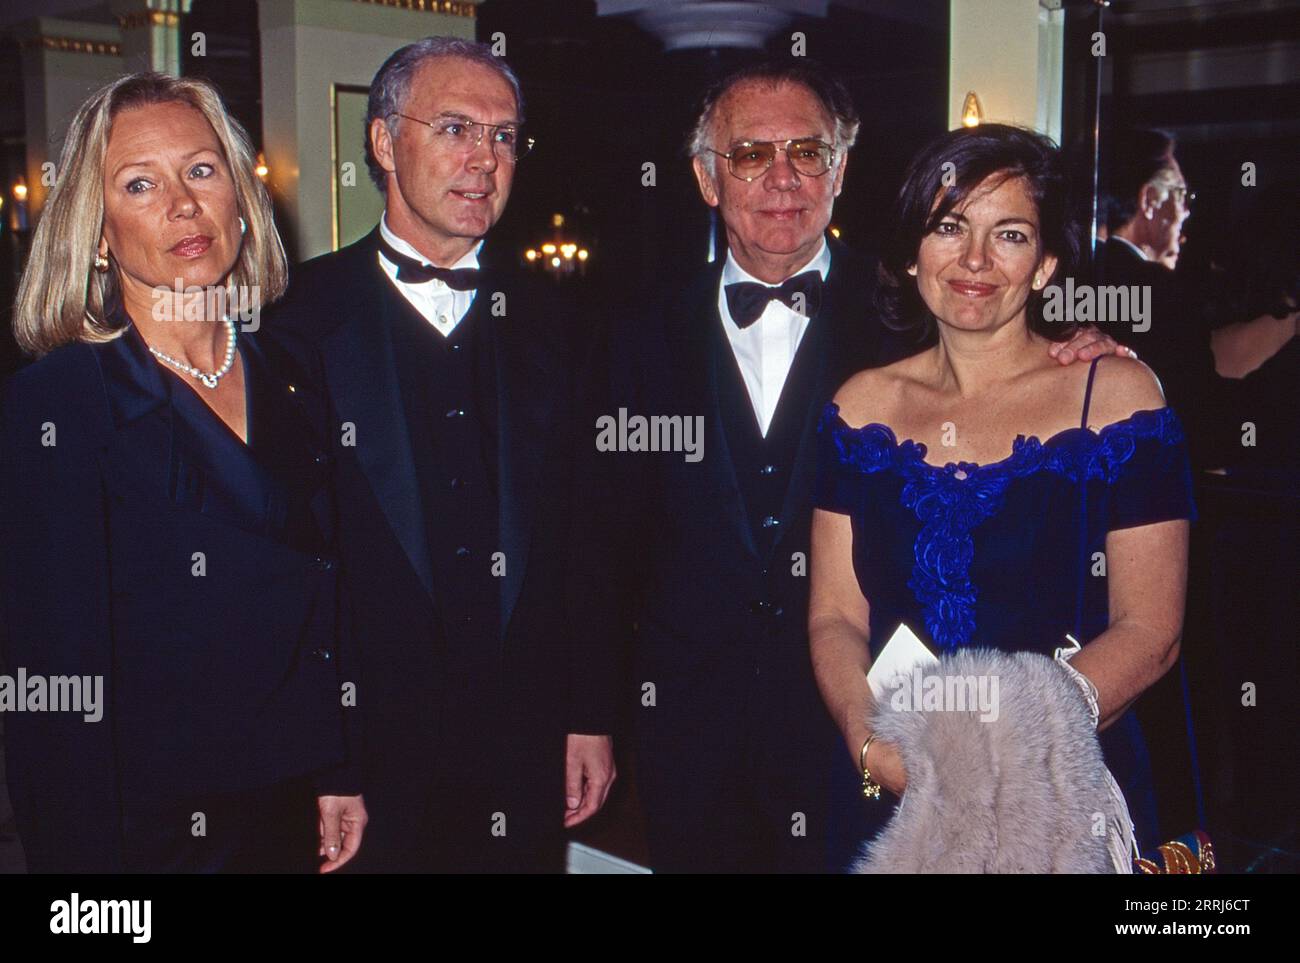 Sybille und Franz Beckenbauer mit Klausjürgen Wussow und Yvonne Viehöfer, bei einer Veranstaltung, circa 1995. Stock Photo